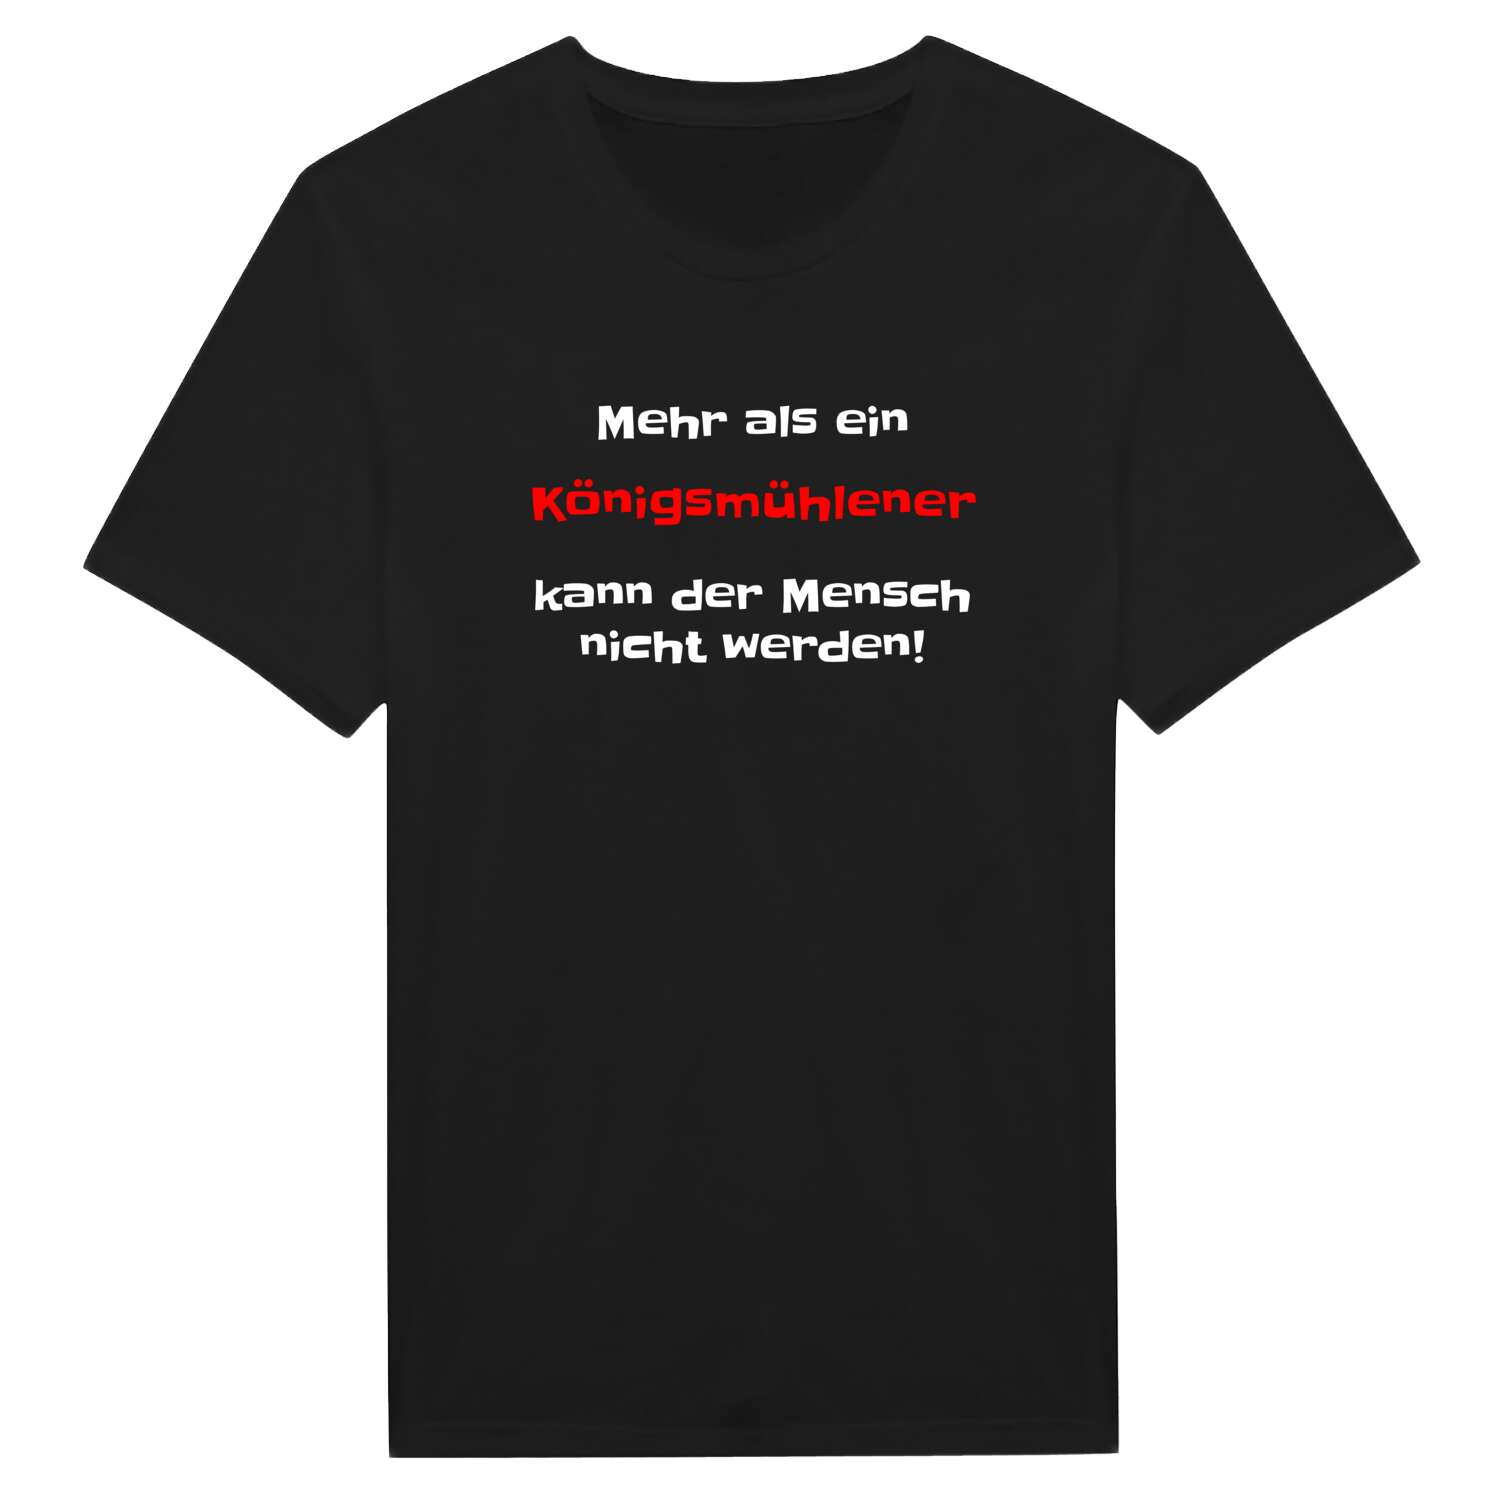 Königsmühle T-Shirt »Mehr als ein«